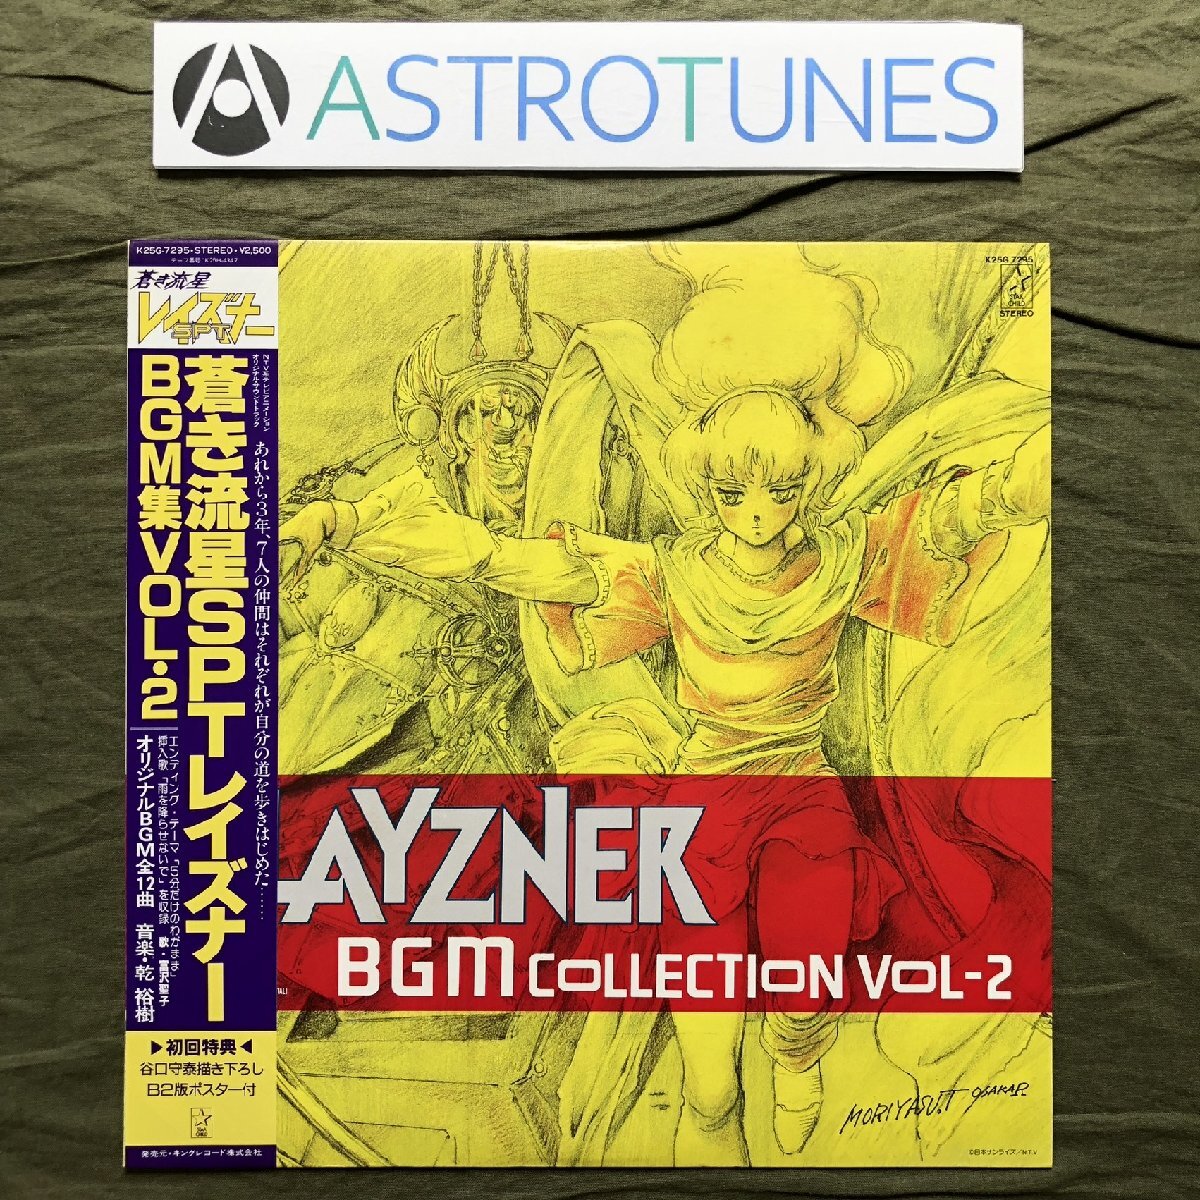  царапина нет прекрасный запись хорошо jacket 1986 год Blue Comet SPT Layzner Blue Comet SPT Layzner LP запись BGM сборник Vol*2 с лентой аниме .... постер есть 